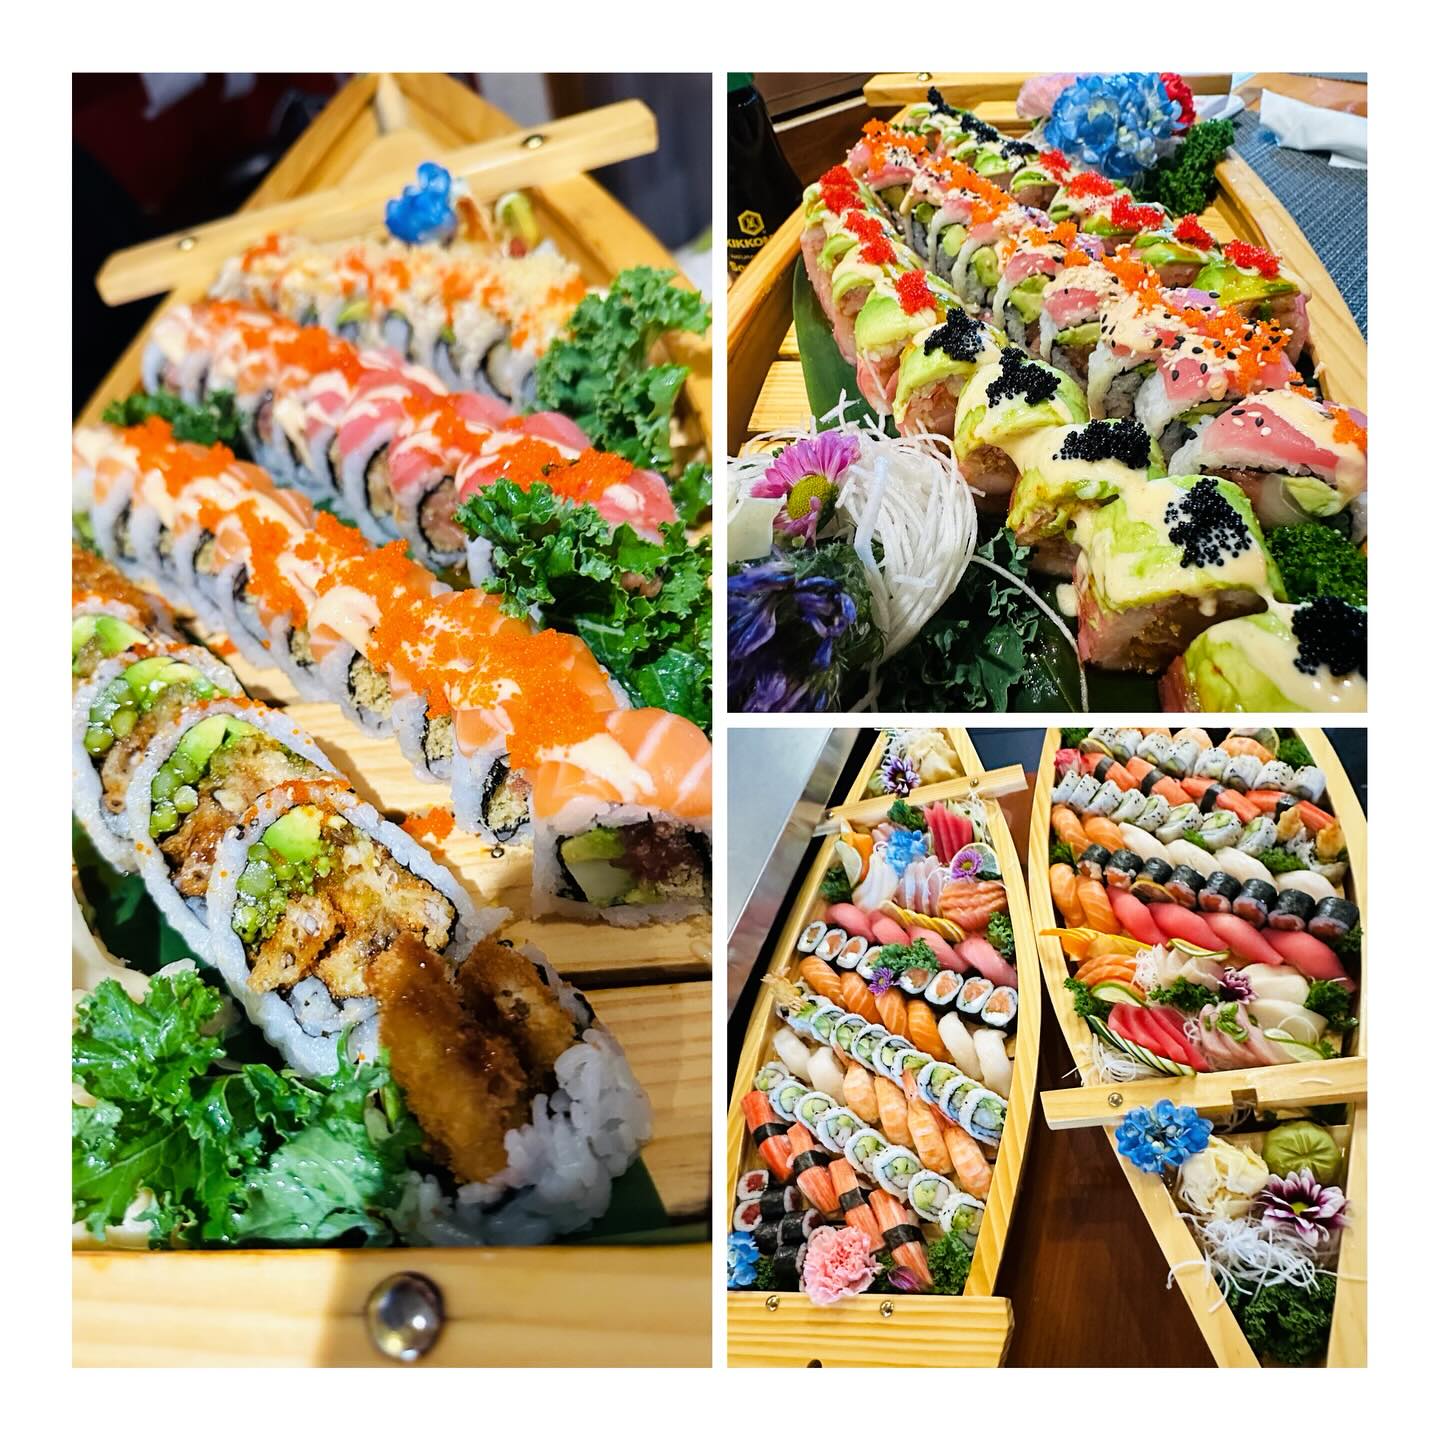 nana noodles and sushi bar